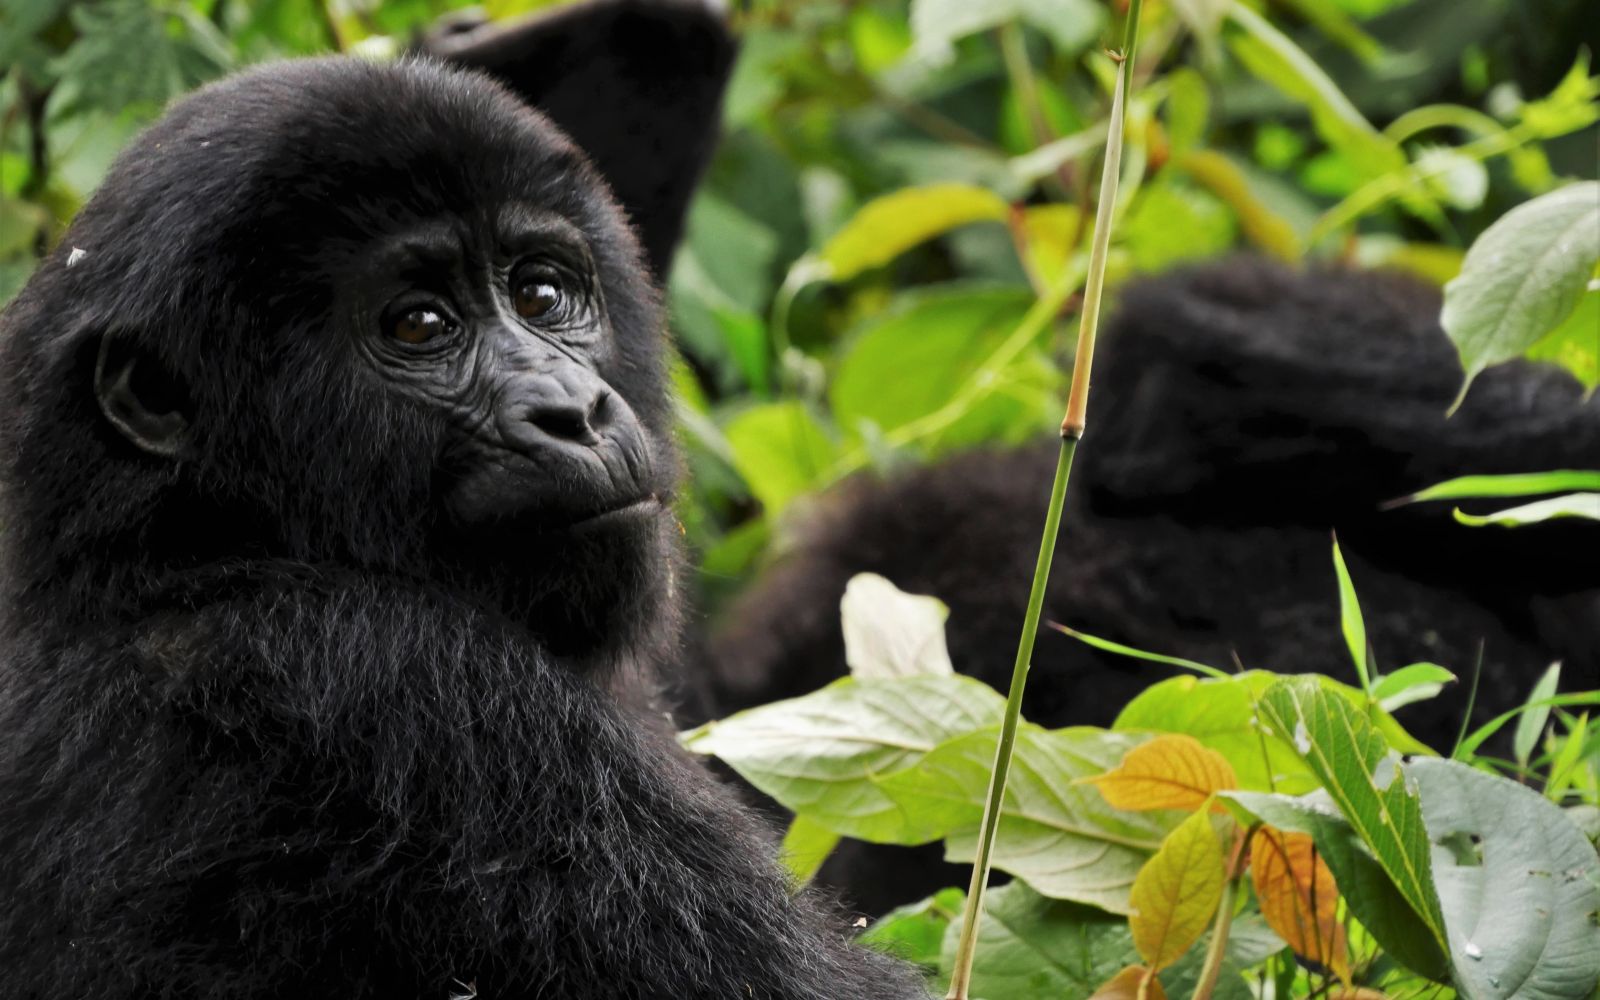 Viaggio di gruppo uganda gorilla safari capodanno